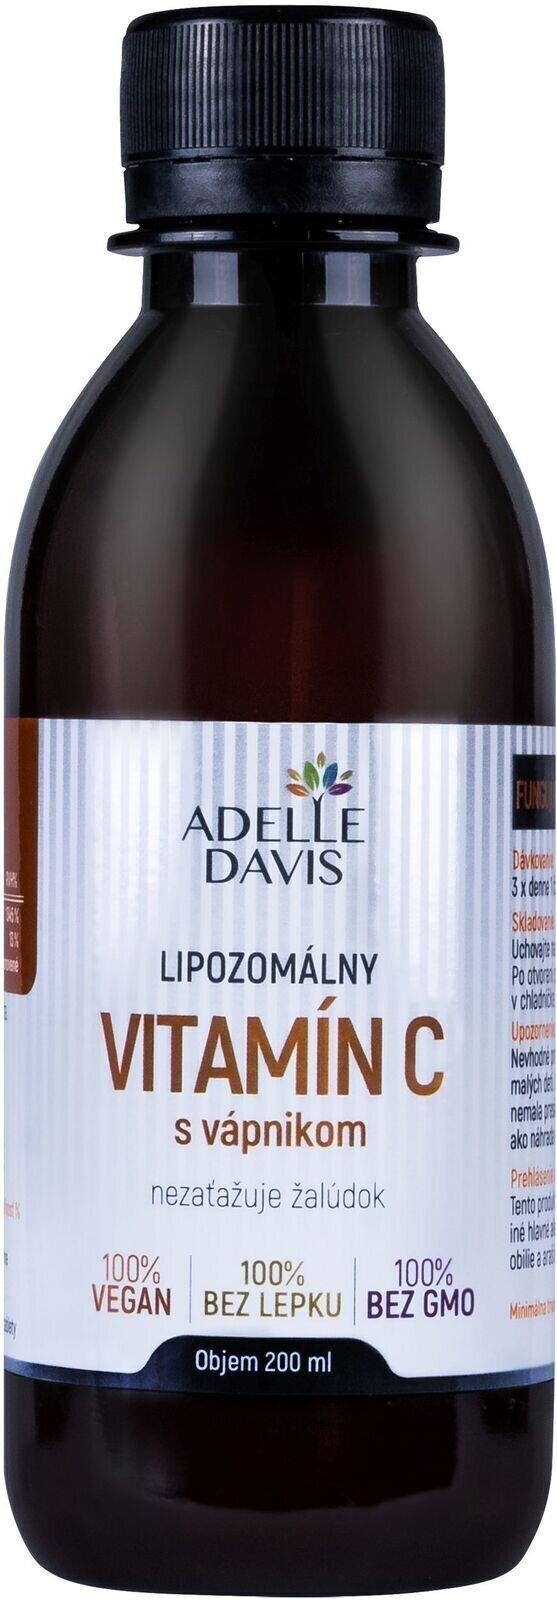 Vitamina C Adelle Davis Liposomal Vitamin C Calcium 200 ml Vitamin C with Calcium Vitamina C